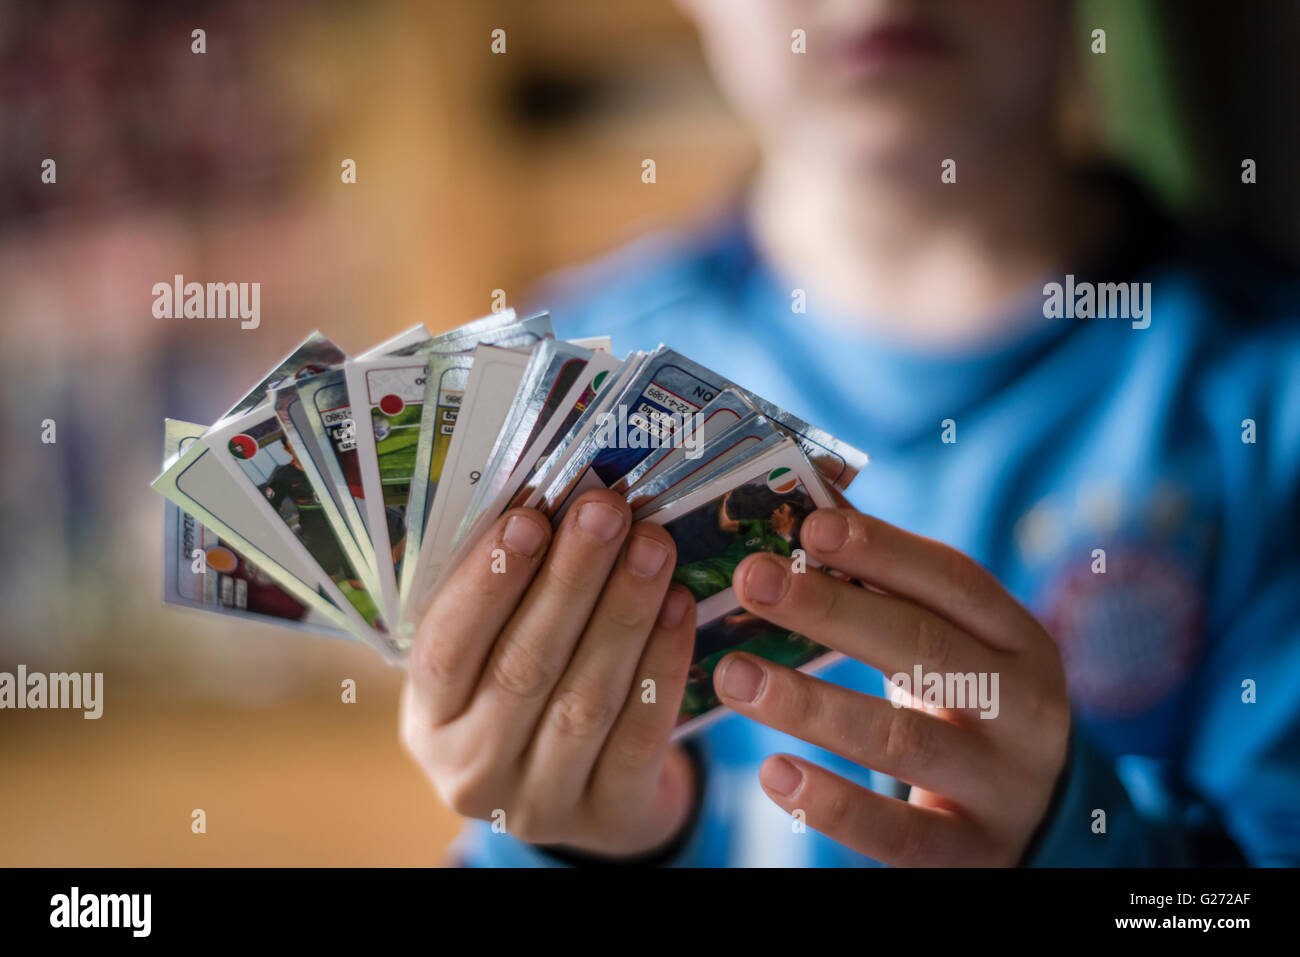 Ein 8 Jahre alter Junge zeigt seine Panini Fußball-Sammelkarten vor in seinem Aufkleber Sammlung Sammelalbum einfügen. Stockfoto